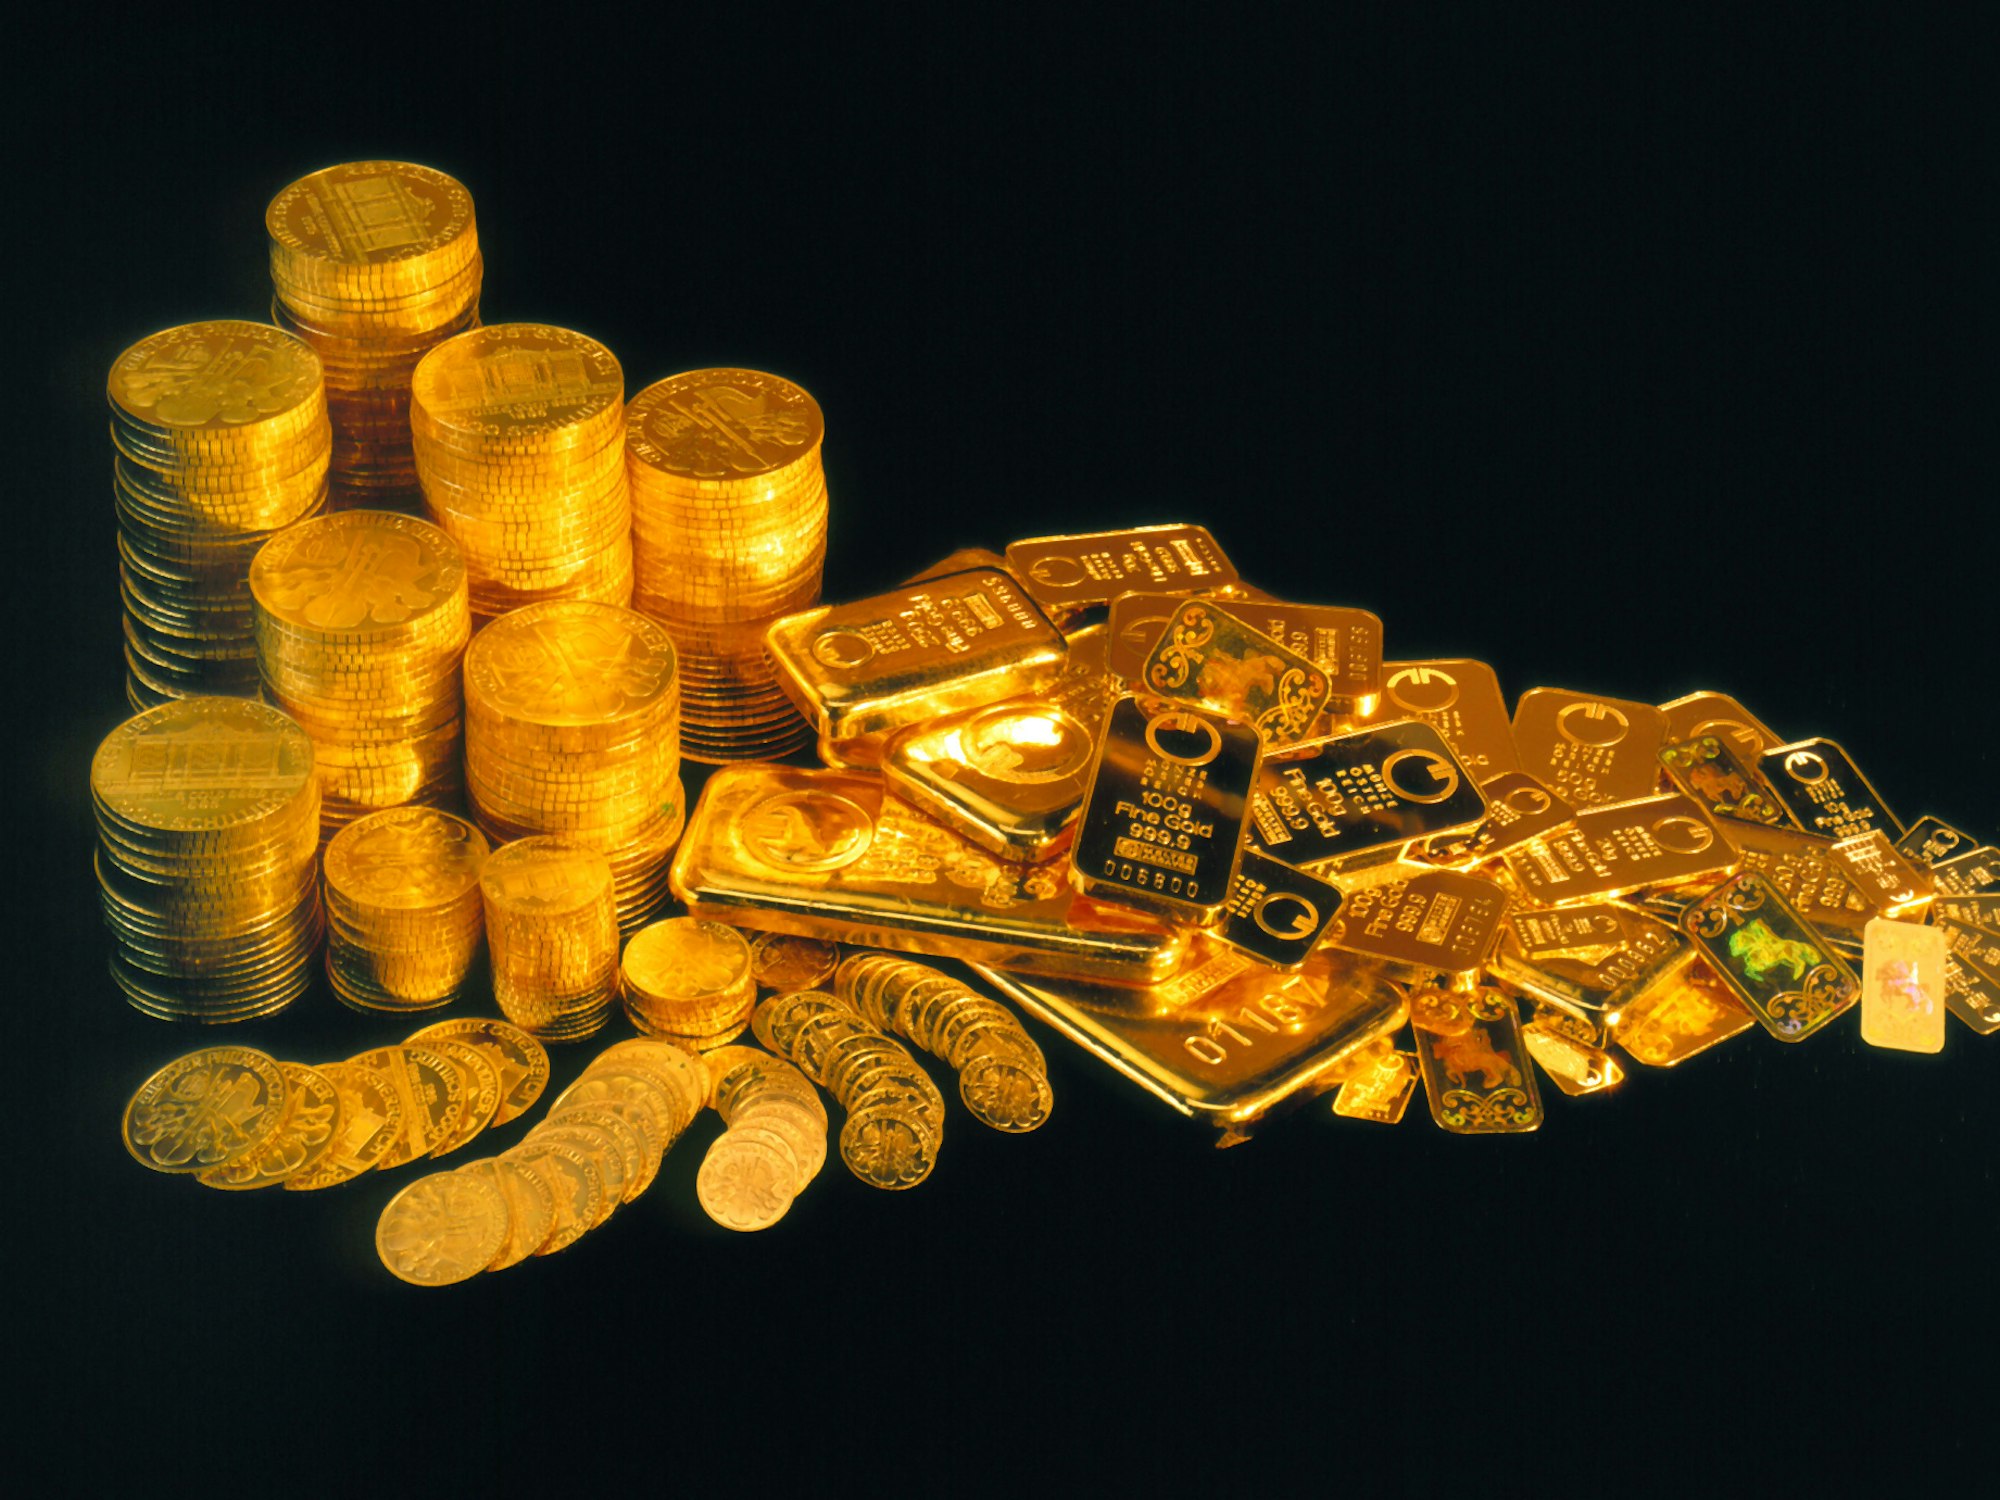 Die Goldmünzen (hier ein Symbolfoto von 2005) haben einen Gesamtwert von mehreren Hunderttausend Euro.